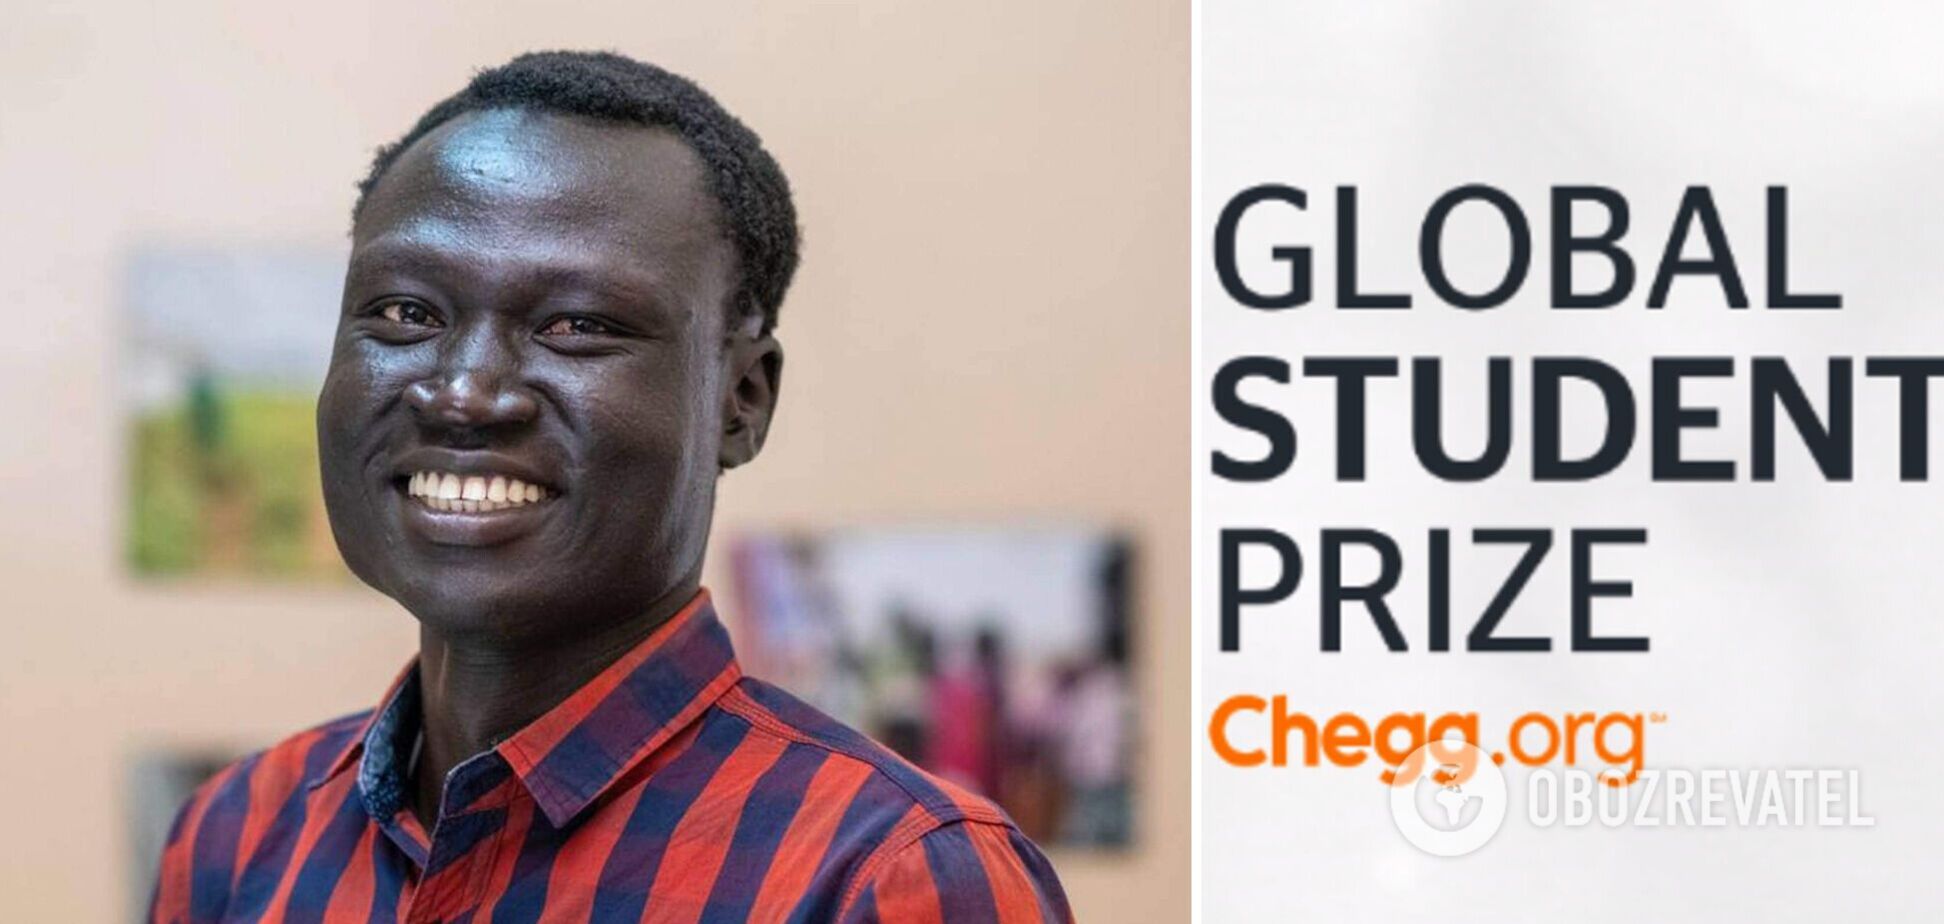 Беженца из Южного Судана назвали лучшим студентом мира: за что Ниал Денг получил премию в 100 тысяч долларов